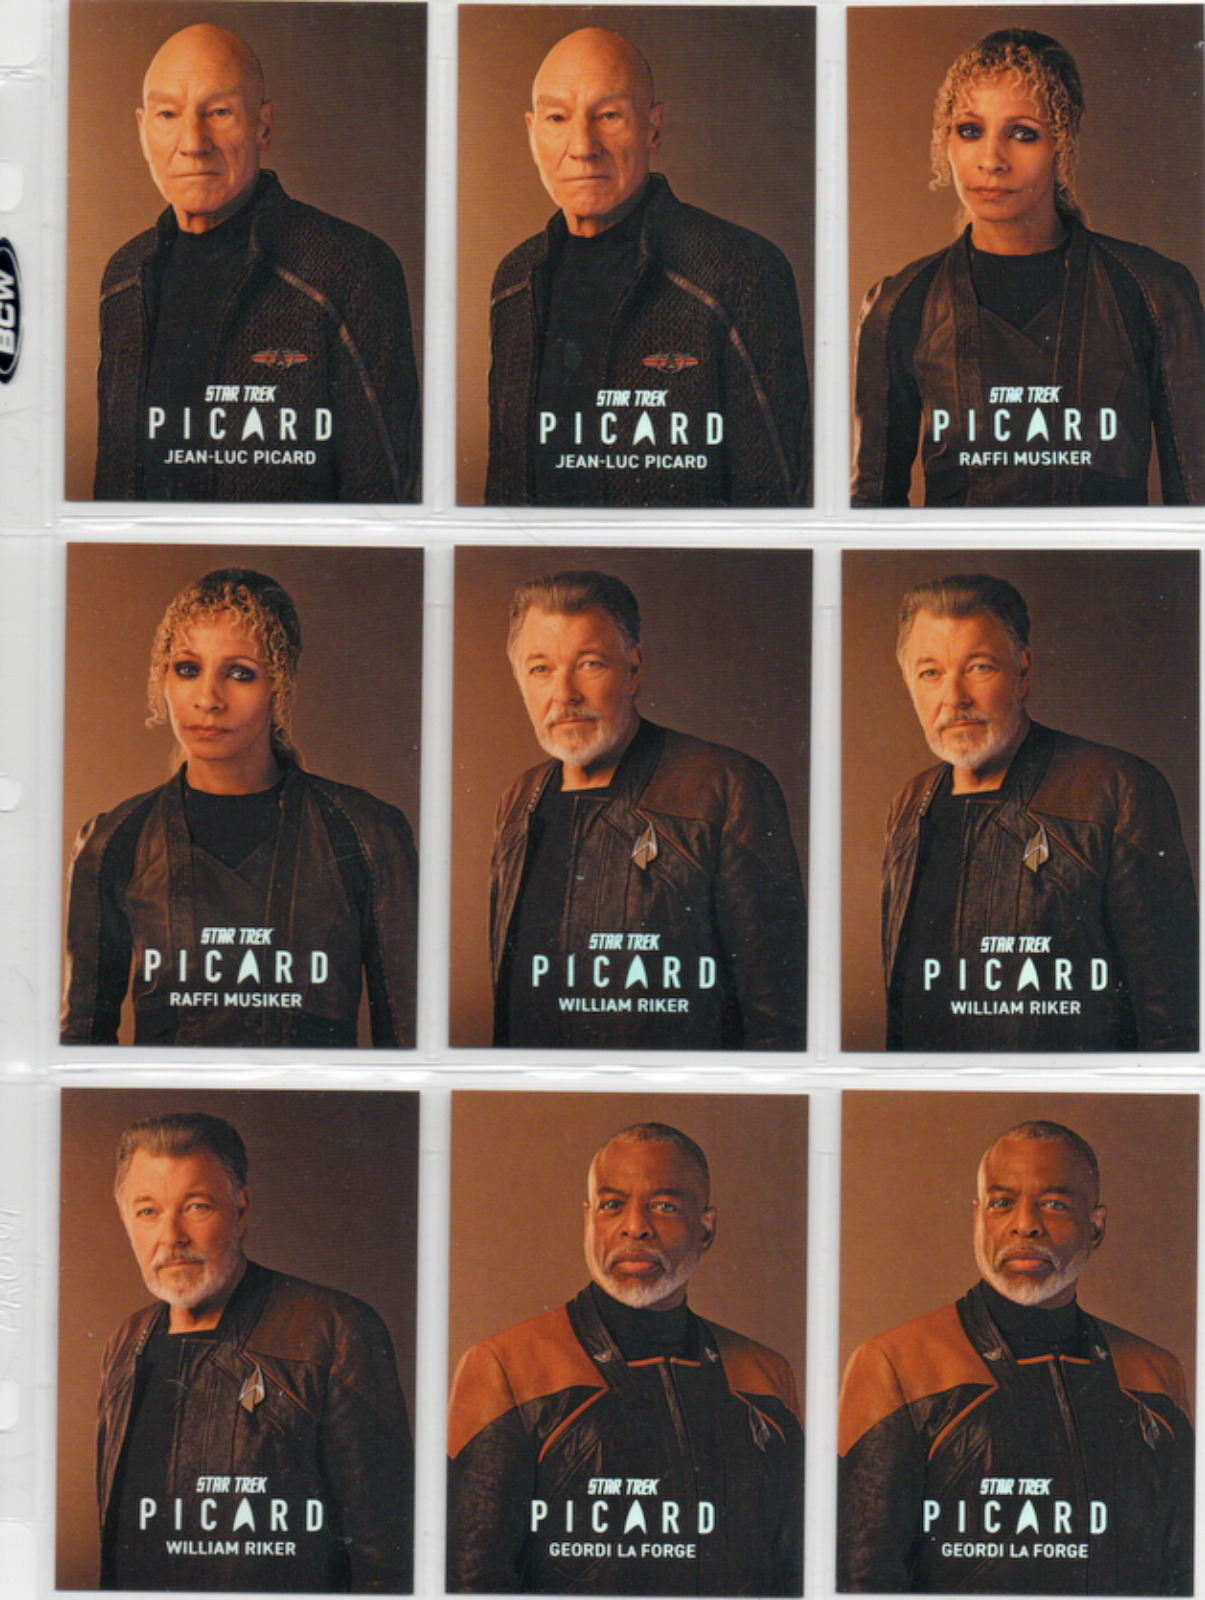 Star Trek Picard Season 2 & 3 Season 3 Cast of Picard - YOU PICK